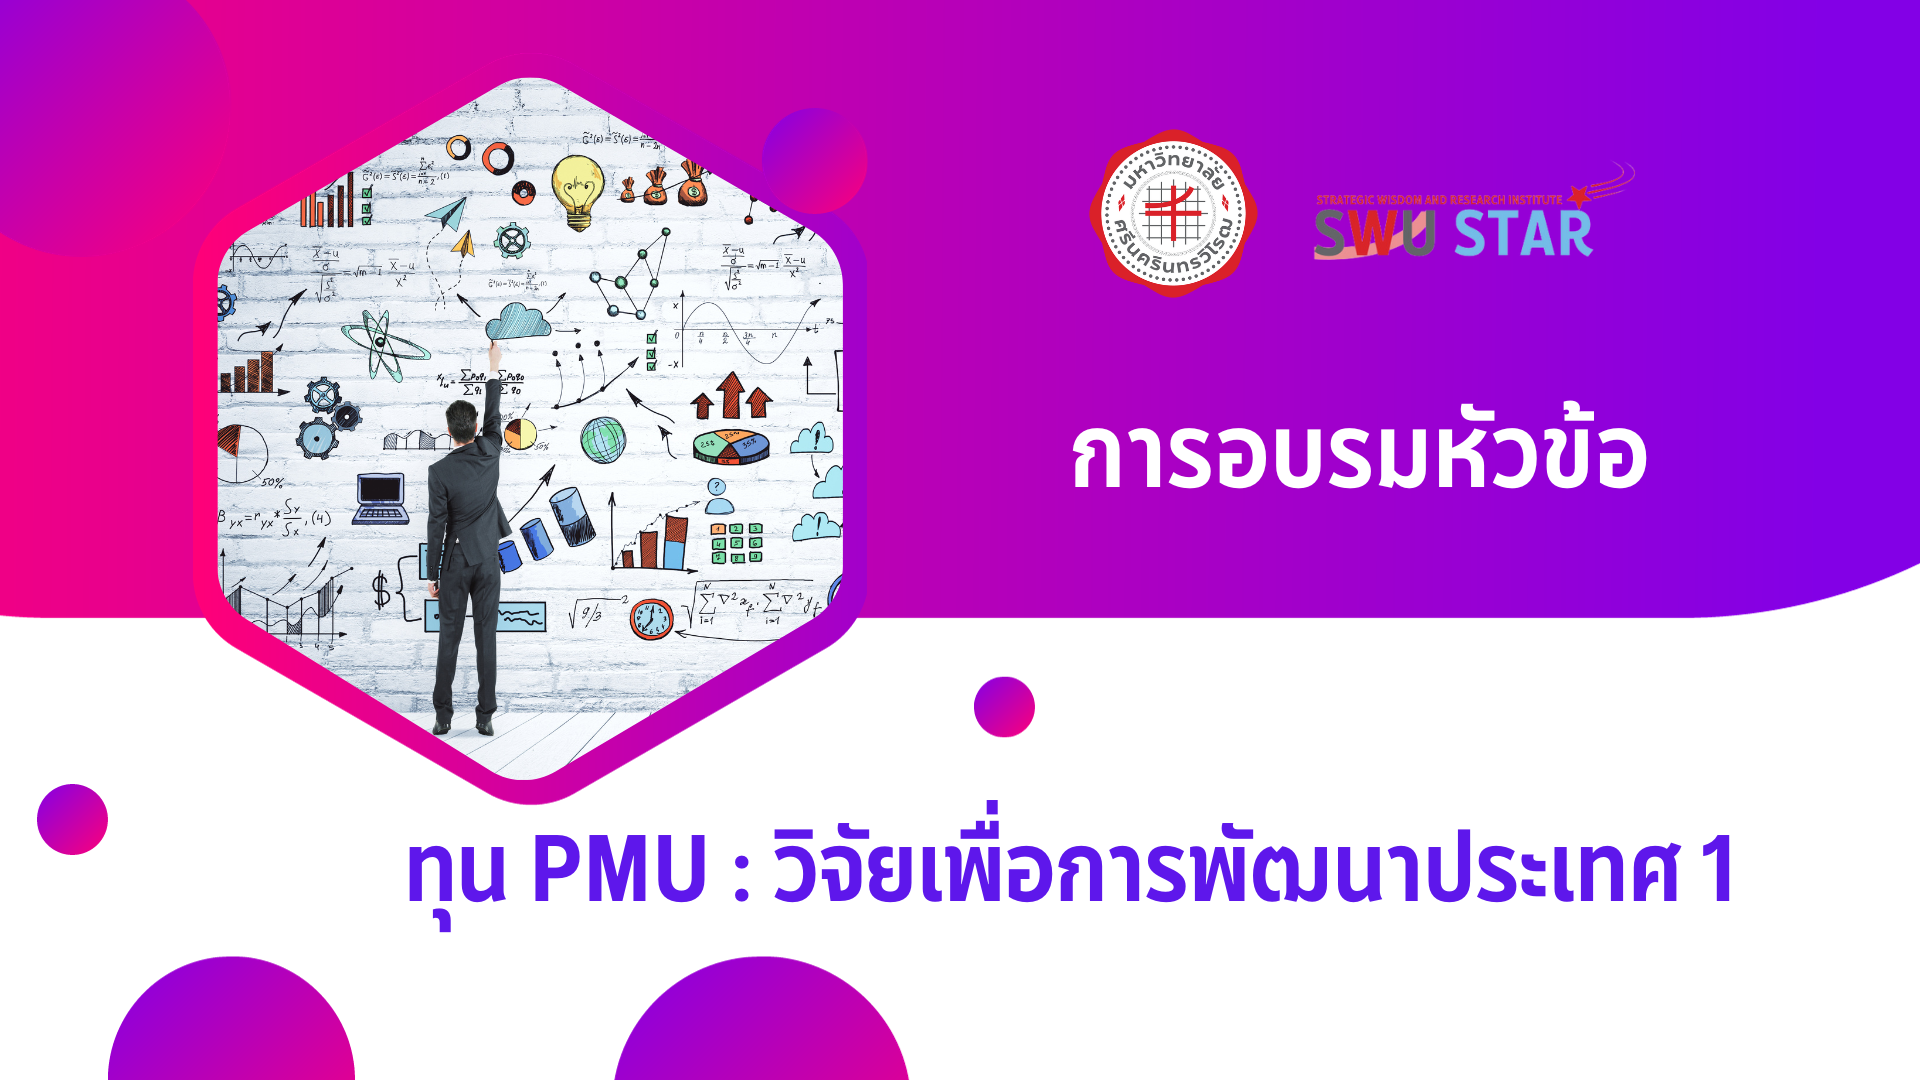 SWU STAR: รู้จักทุน PMU: วิจัยเพื่อการพัฒนาประเทศ 1